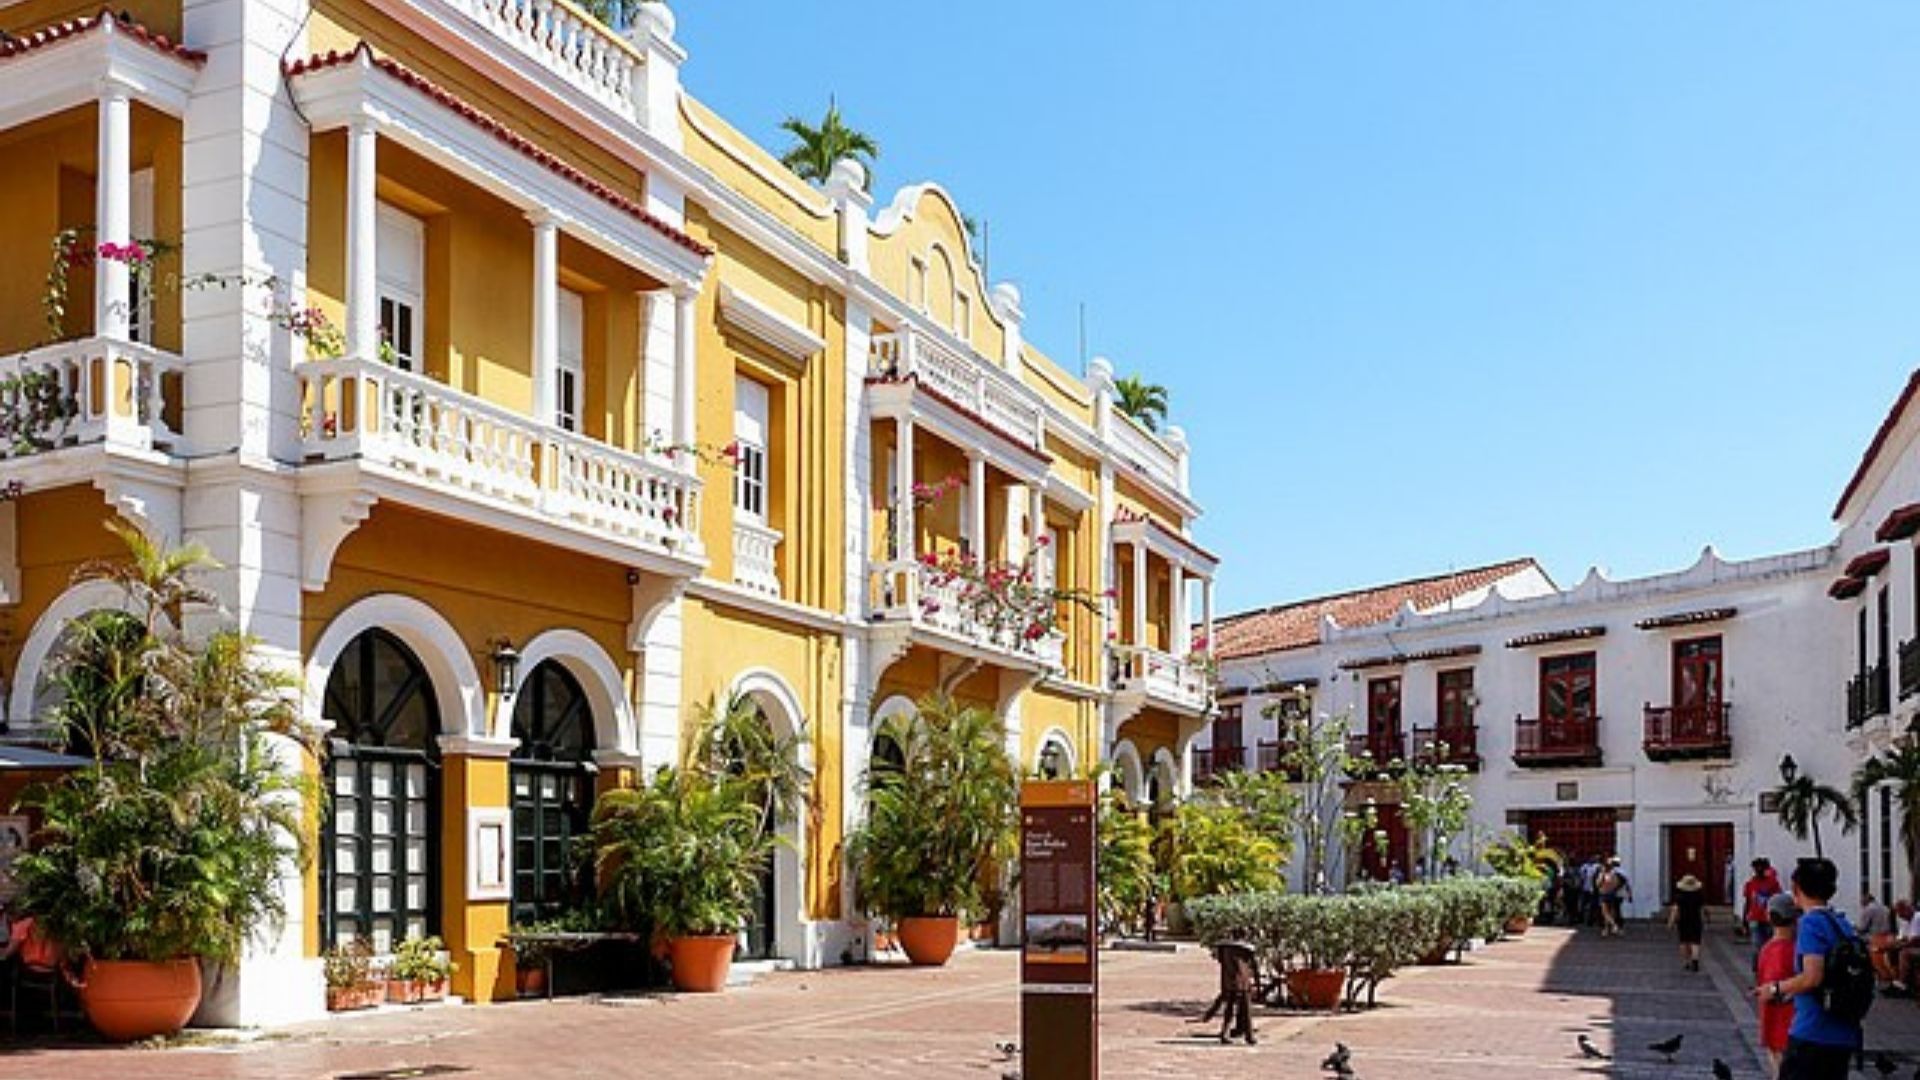 Plaza de San Pedro Claver, Cartagena, Colombia. Wikimedia Commons